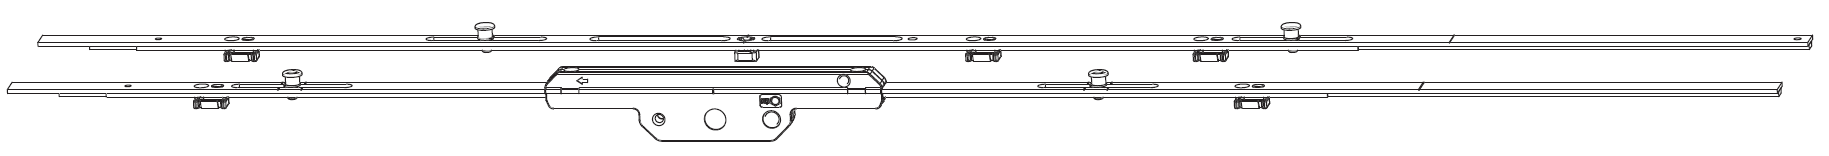 MAICO - Kit Cremonese RAIL-SYSTEMS per anta scorrevole altezza maniglia fissa prolungabile senza dss - gr / dim. 05 - entrata 17,5 - alt. man. 950 - lbb/hbb 1701 - 1900